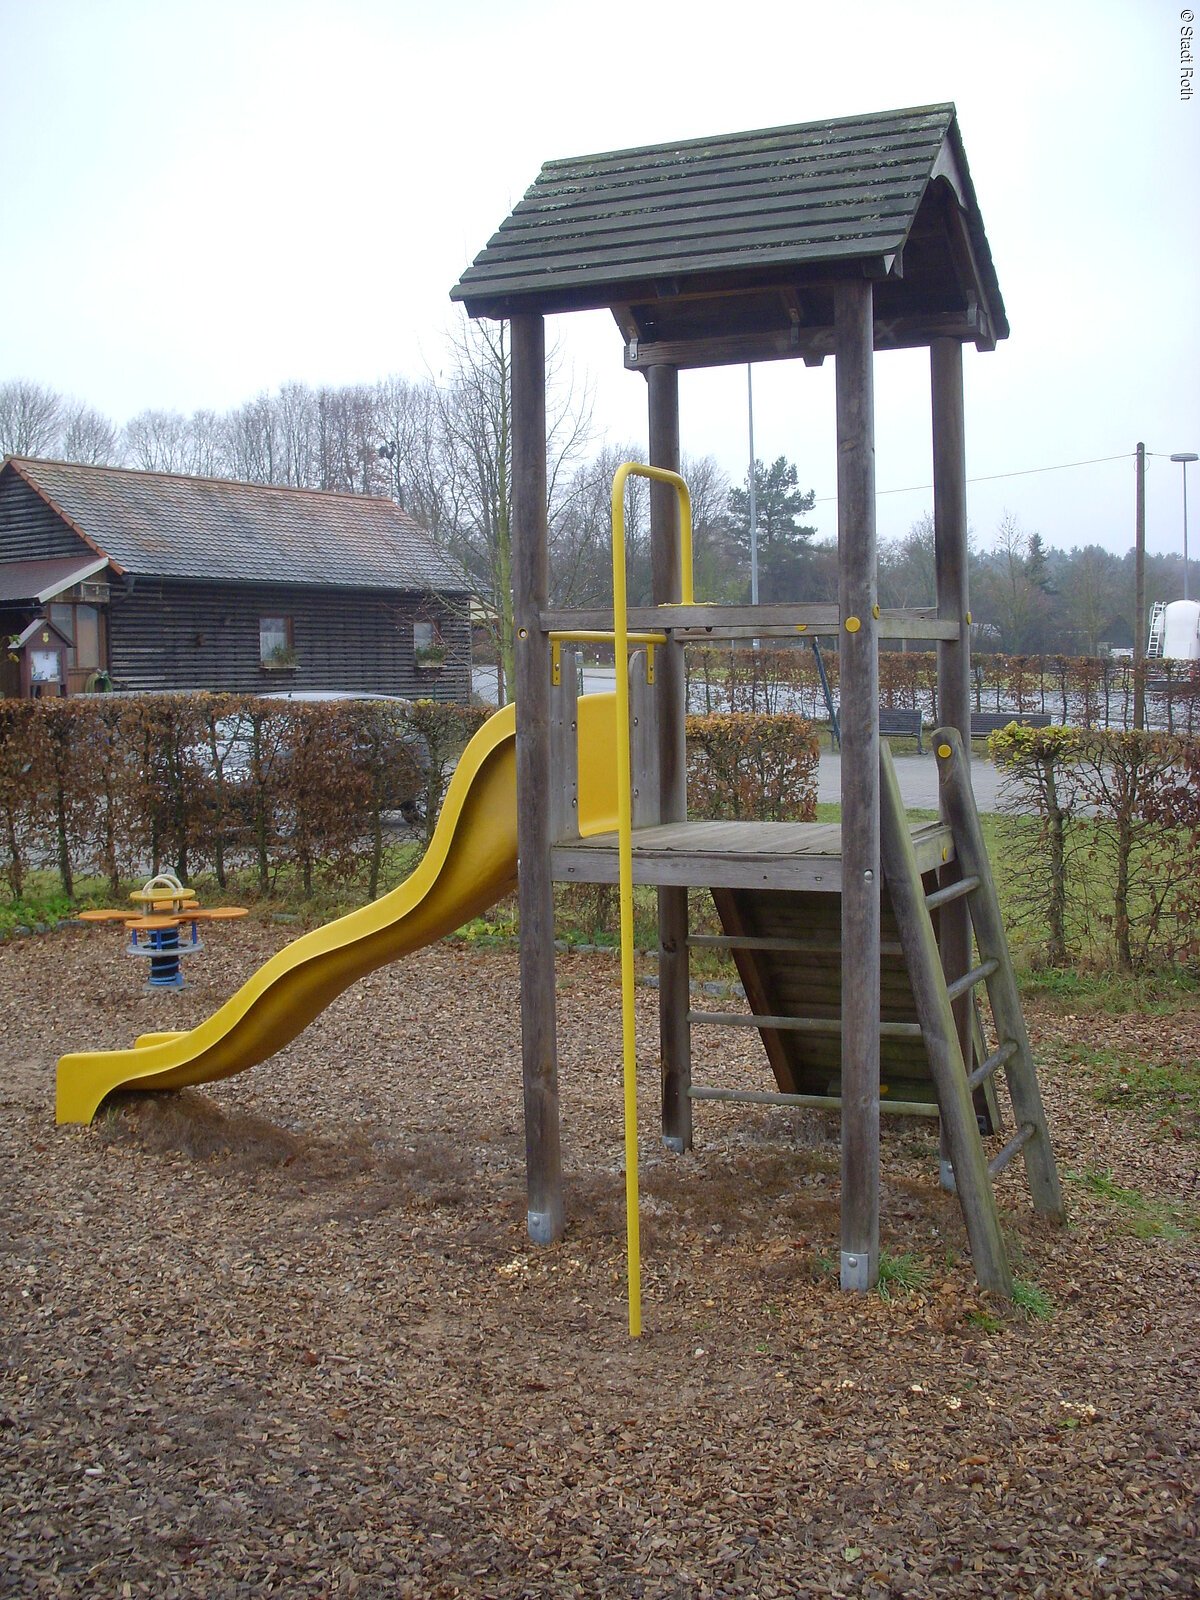 Spielplatz in Roth - Hirschenzaun